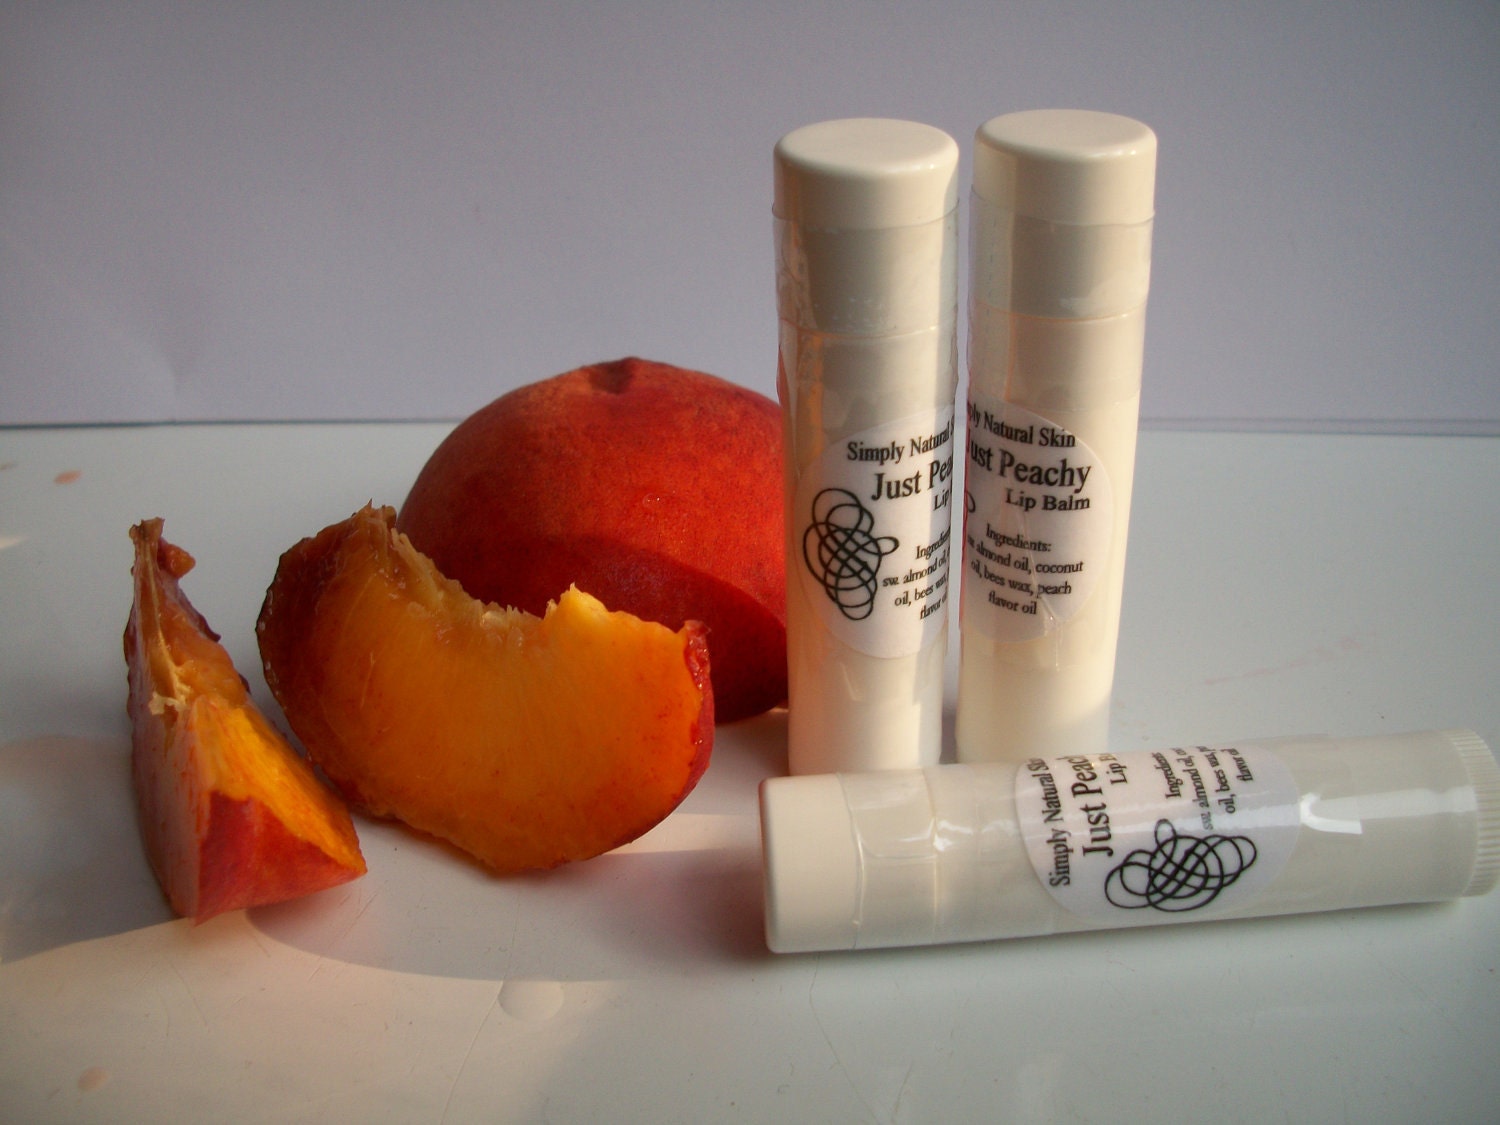 Just Peachy - Lip Balm - Three tubes